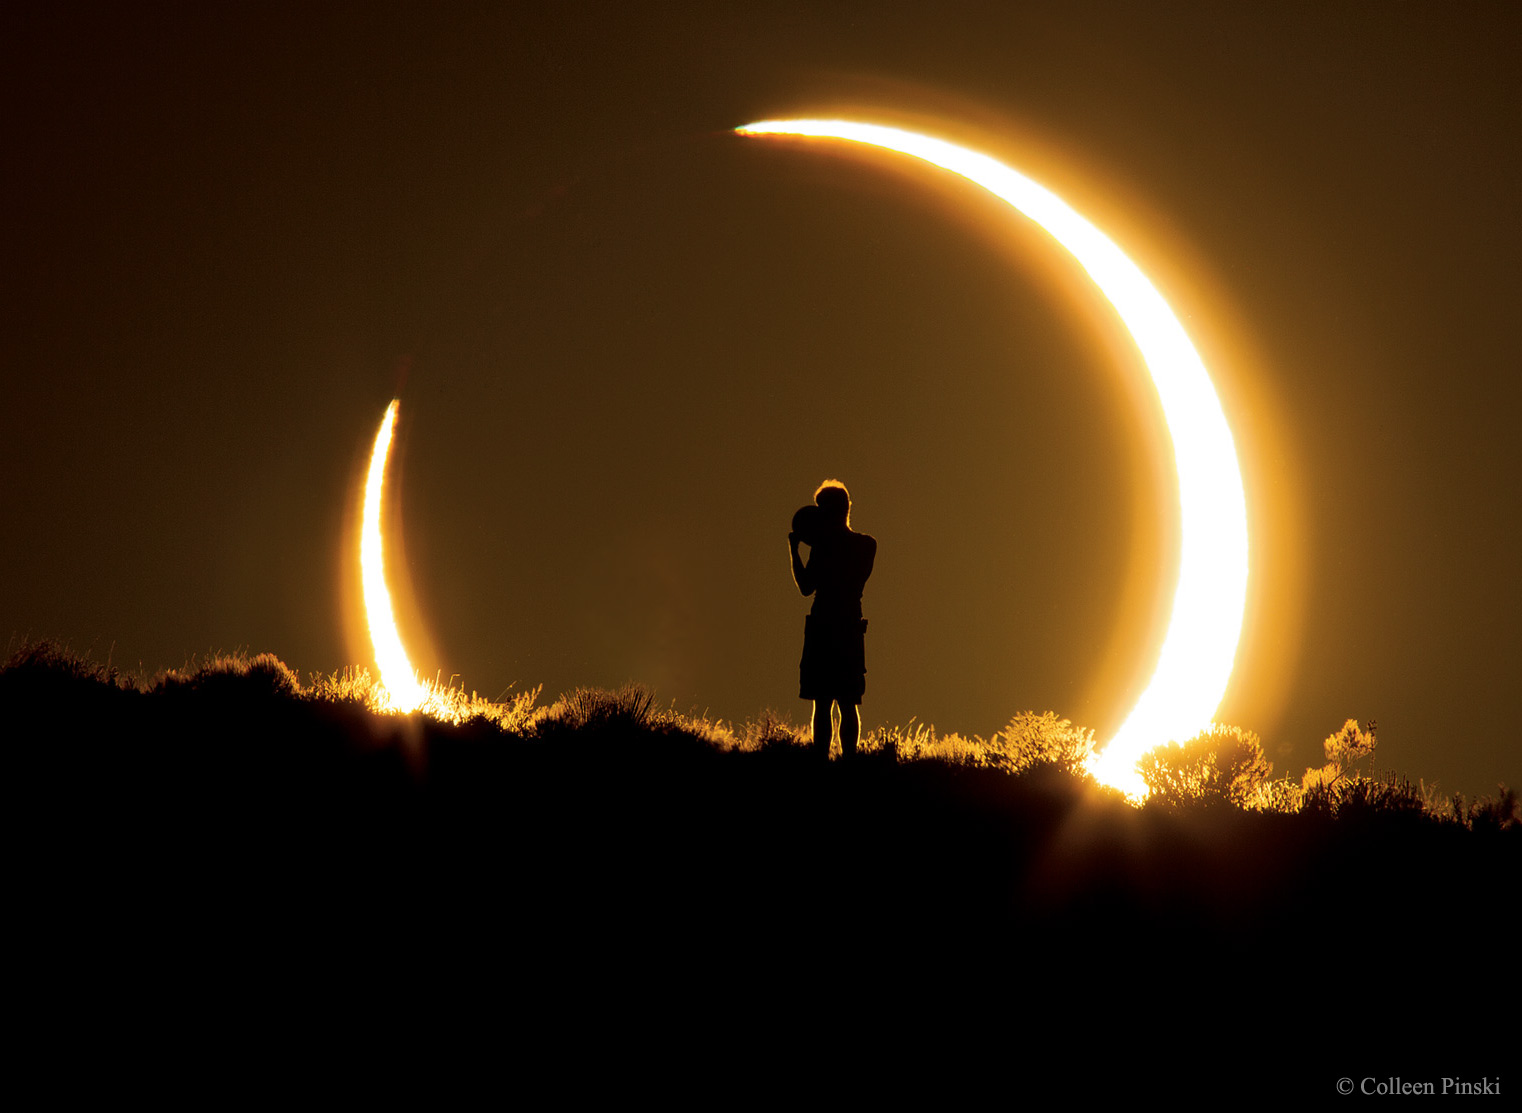  Cielo de 2017 ofrecerá eclipse solar y conjunciones de planetas